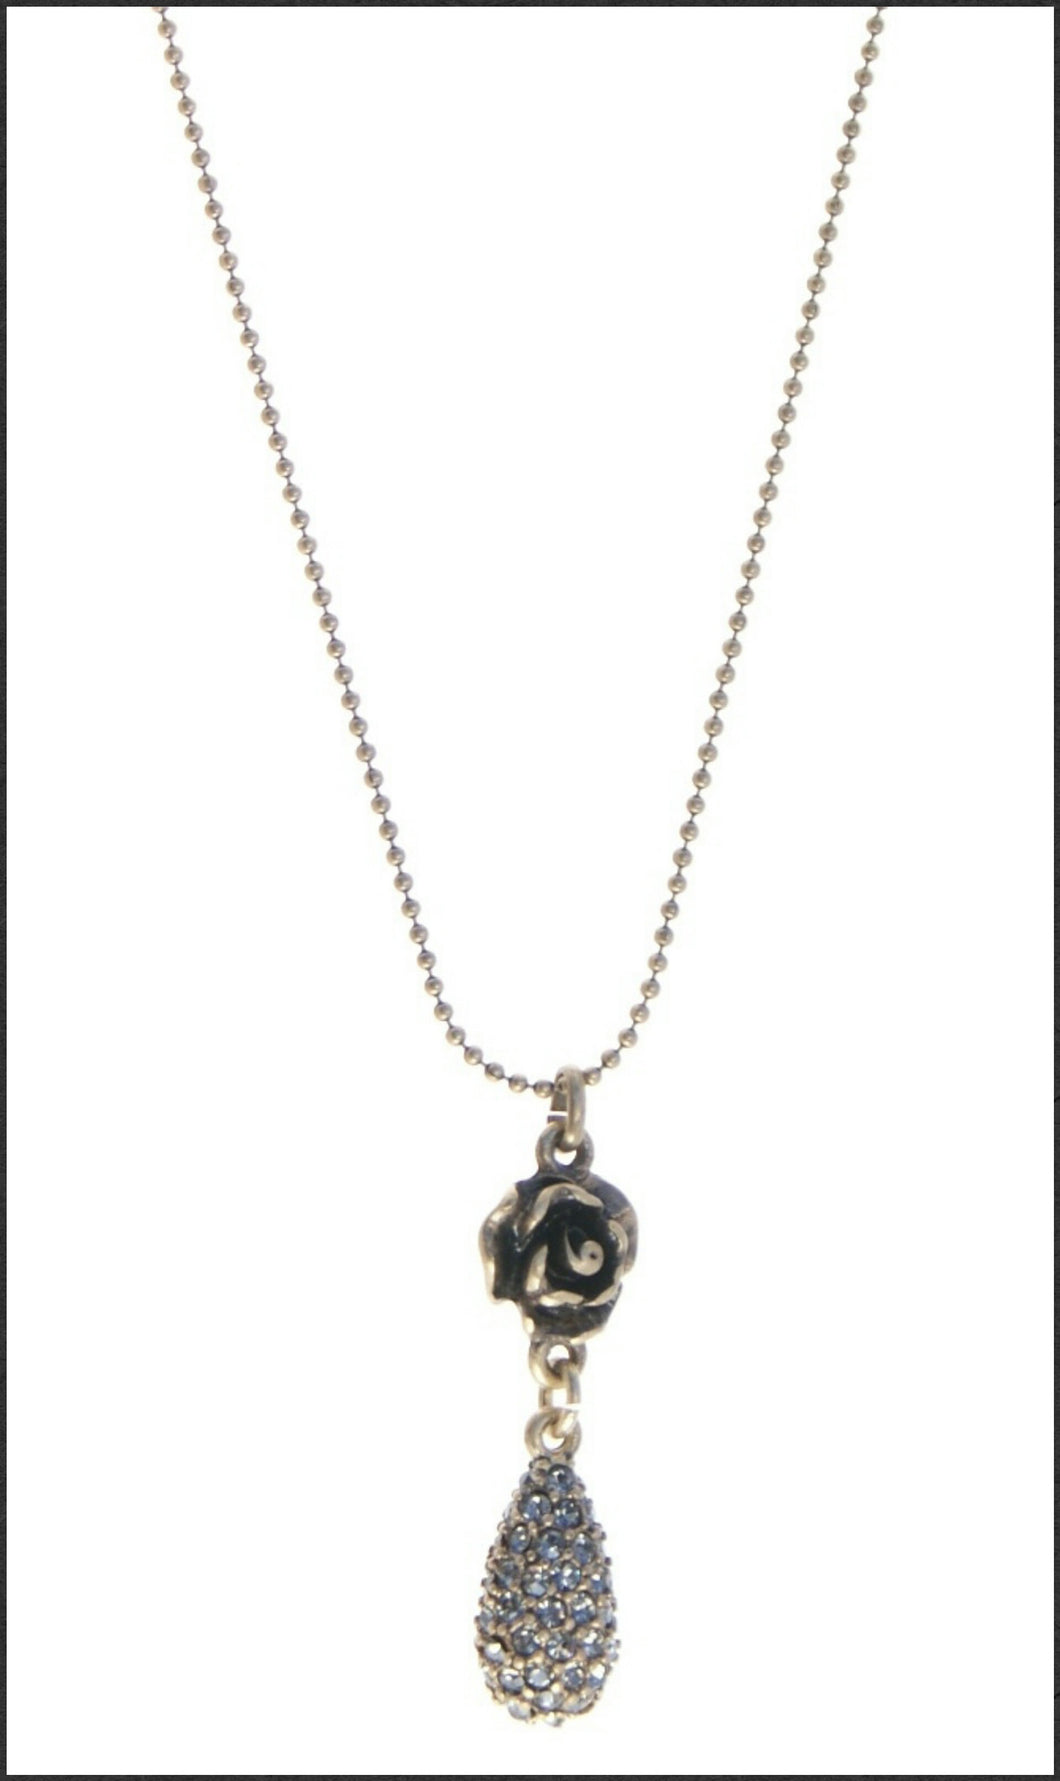 Bronze Rose w Teardrop Necklace - Whitehot Jewellery - 1